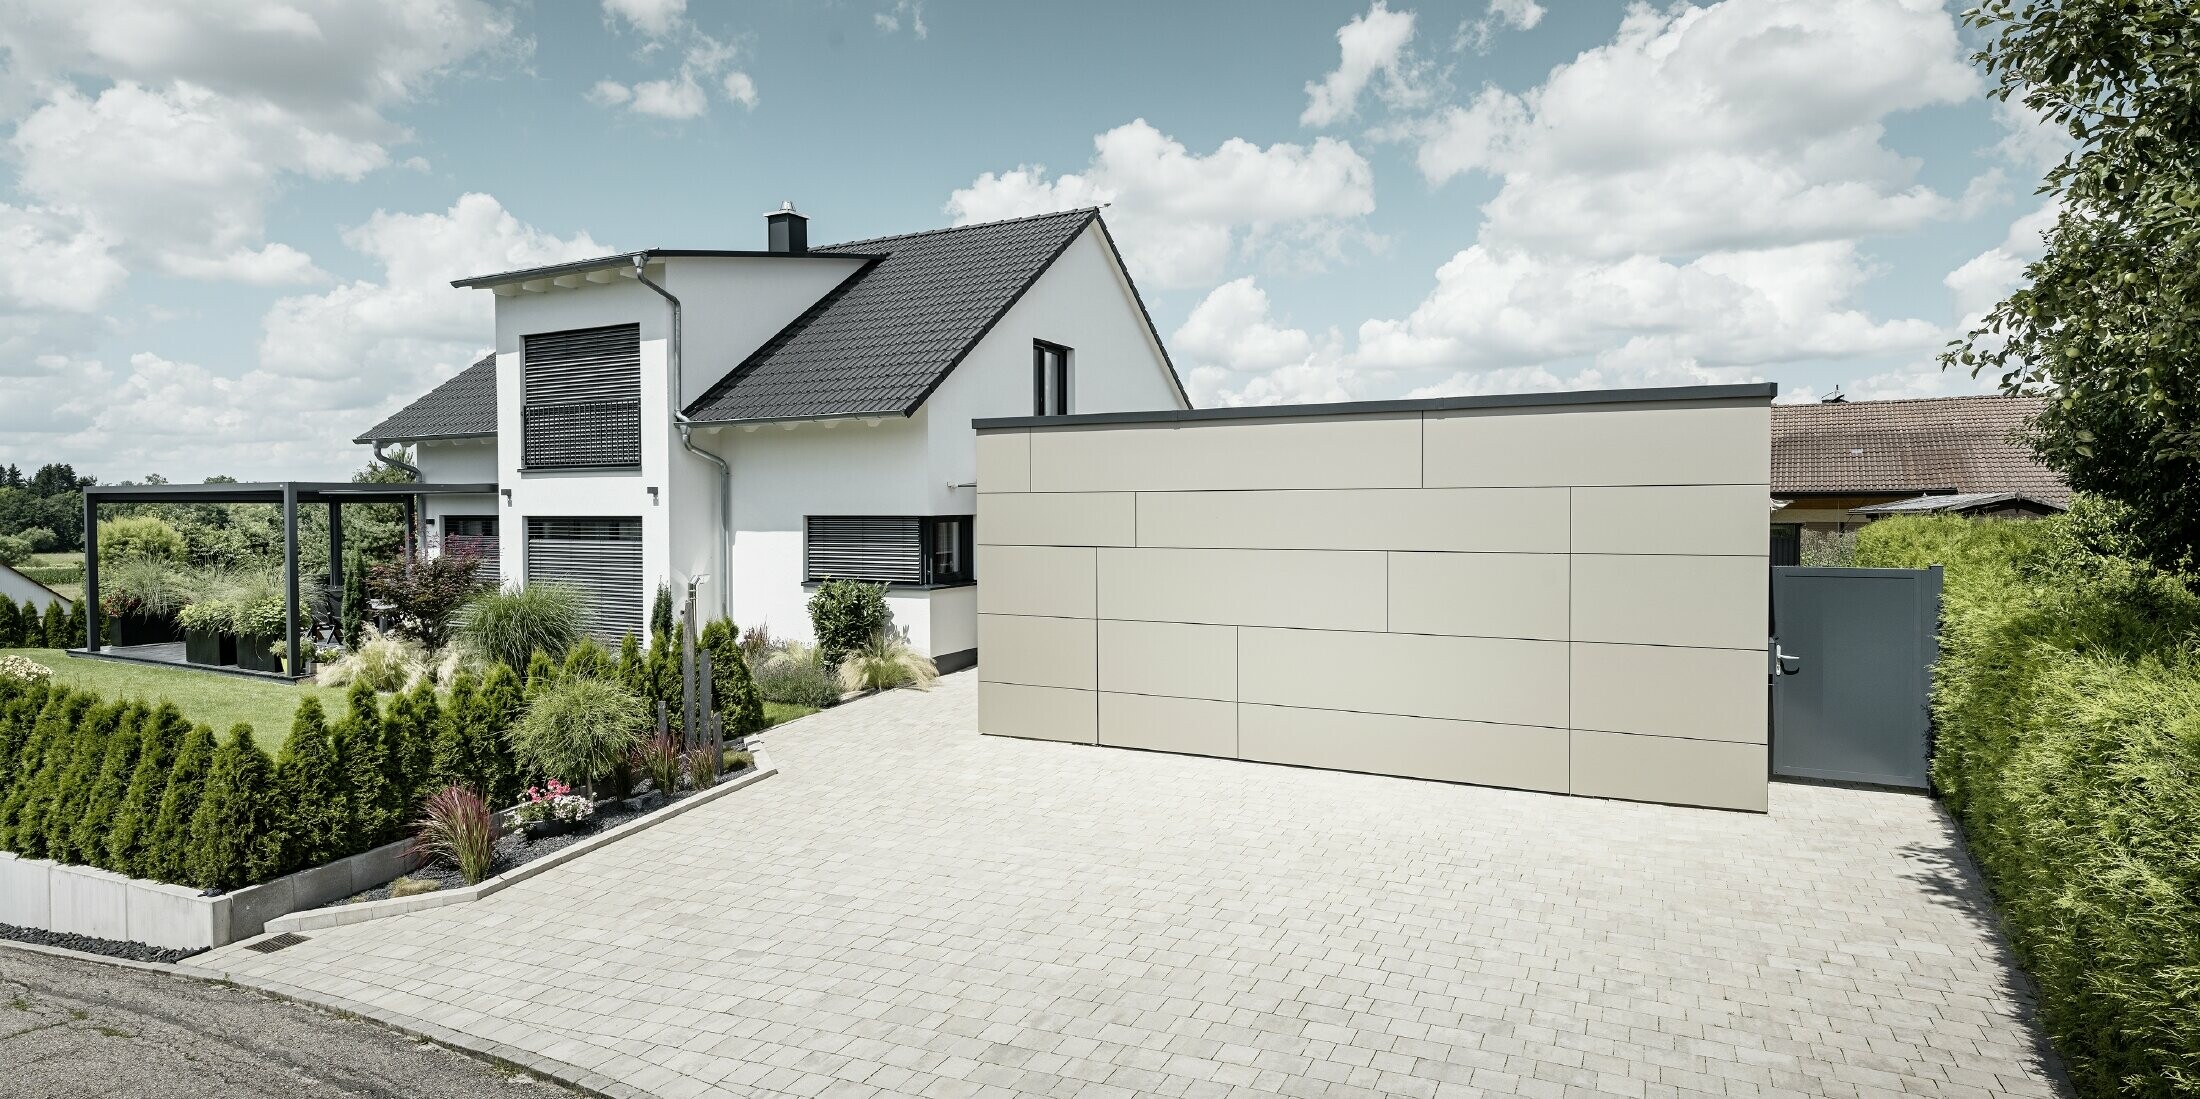 La façade du garage de cette maison individuelle est entièrement revêtue avec le panneau composite en aluminium couleur bronze. On ne distingue pas non plus la porte de garage des joints. Une allée spacieuse s'étend juste devant.